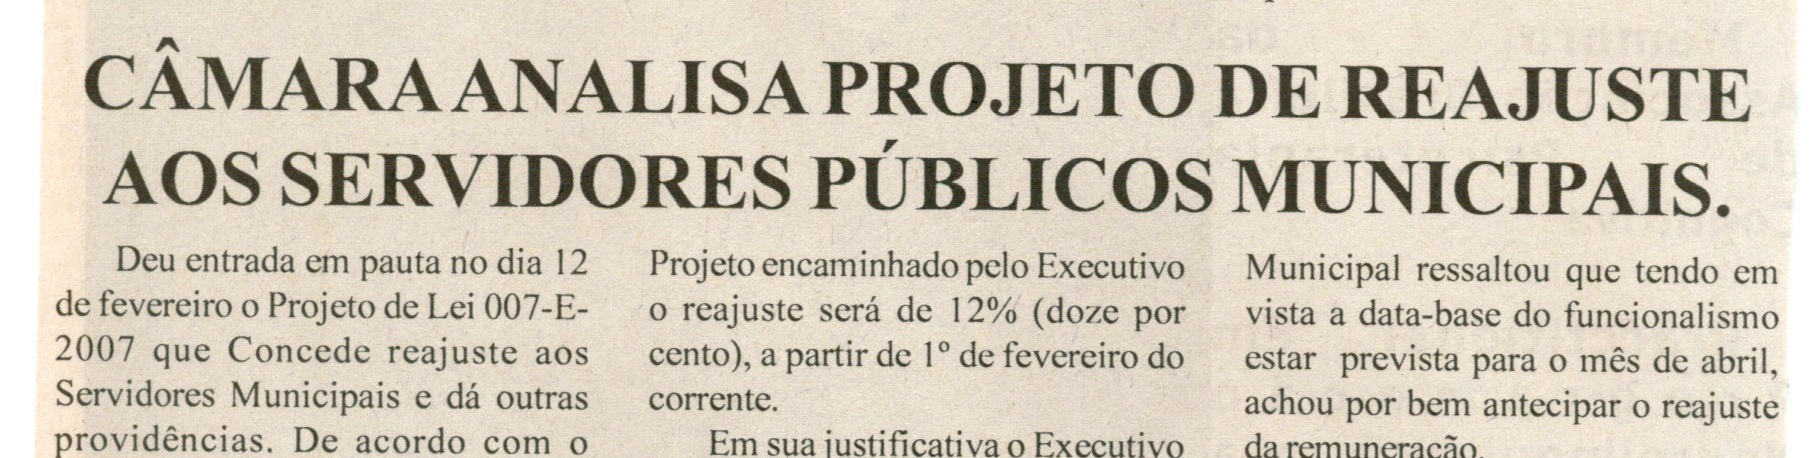 Câmara analisa projeto de reajuste aos servidores públicos municipais. Folha Livre, Conselheiro lafaiete, 16 de fev. 2 008, p. 14.